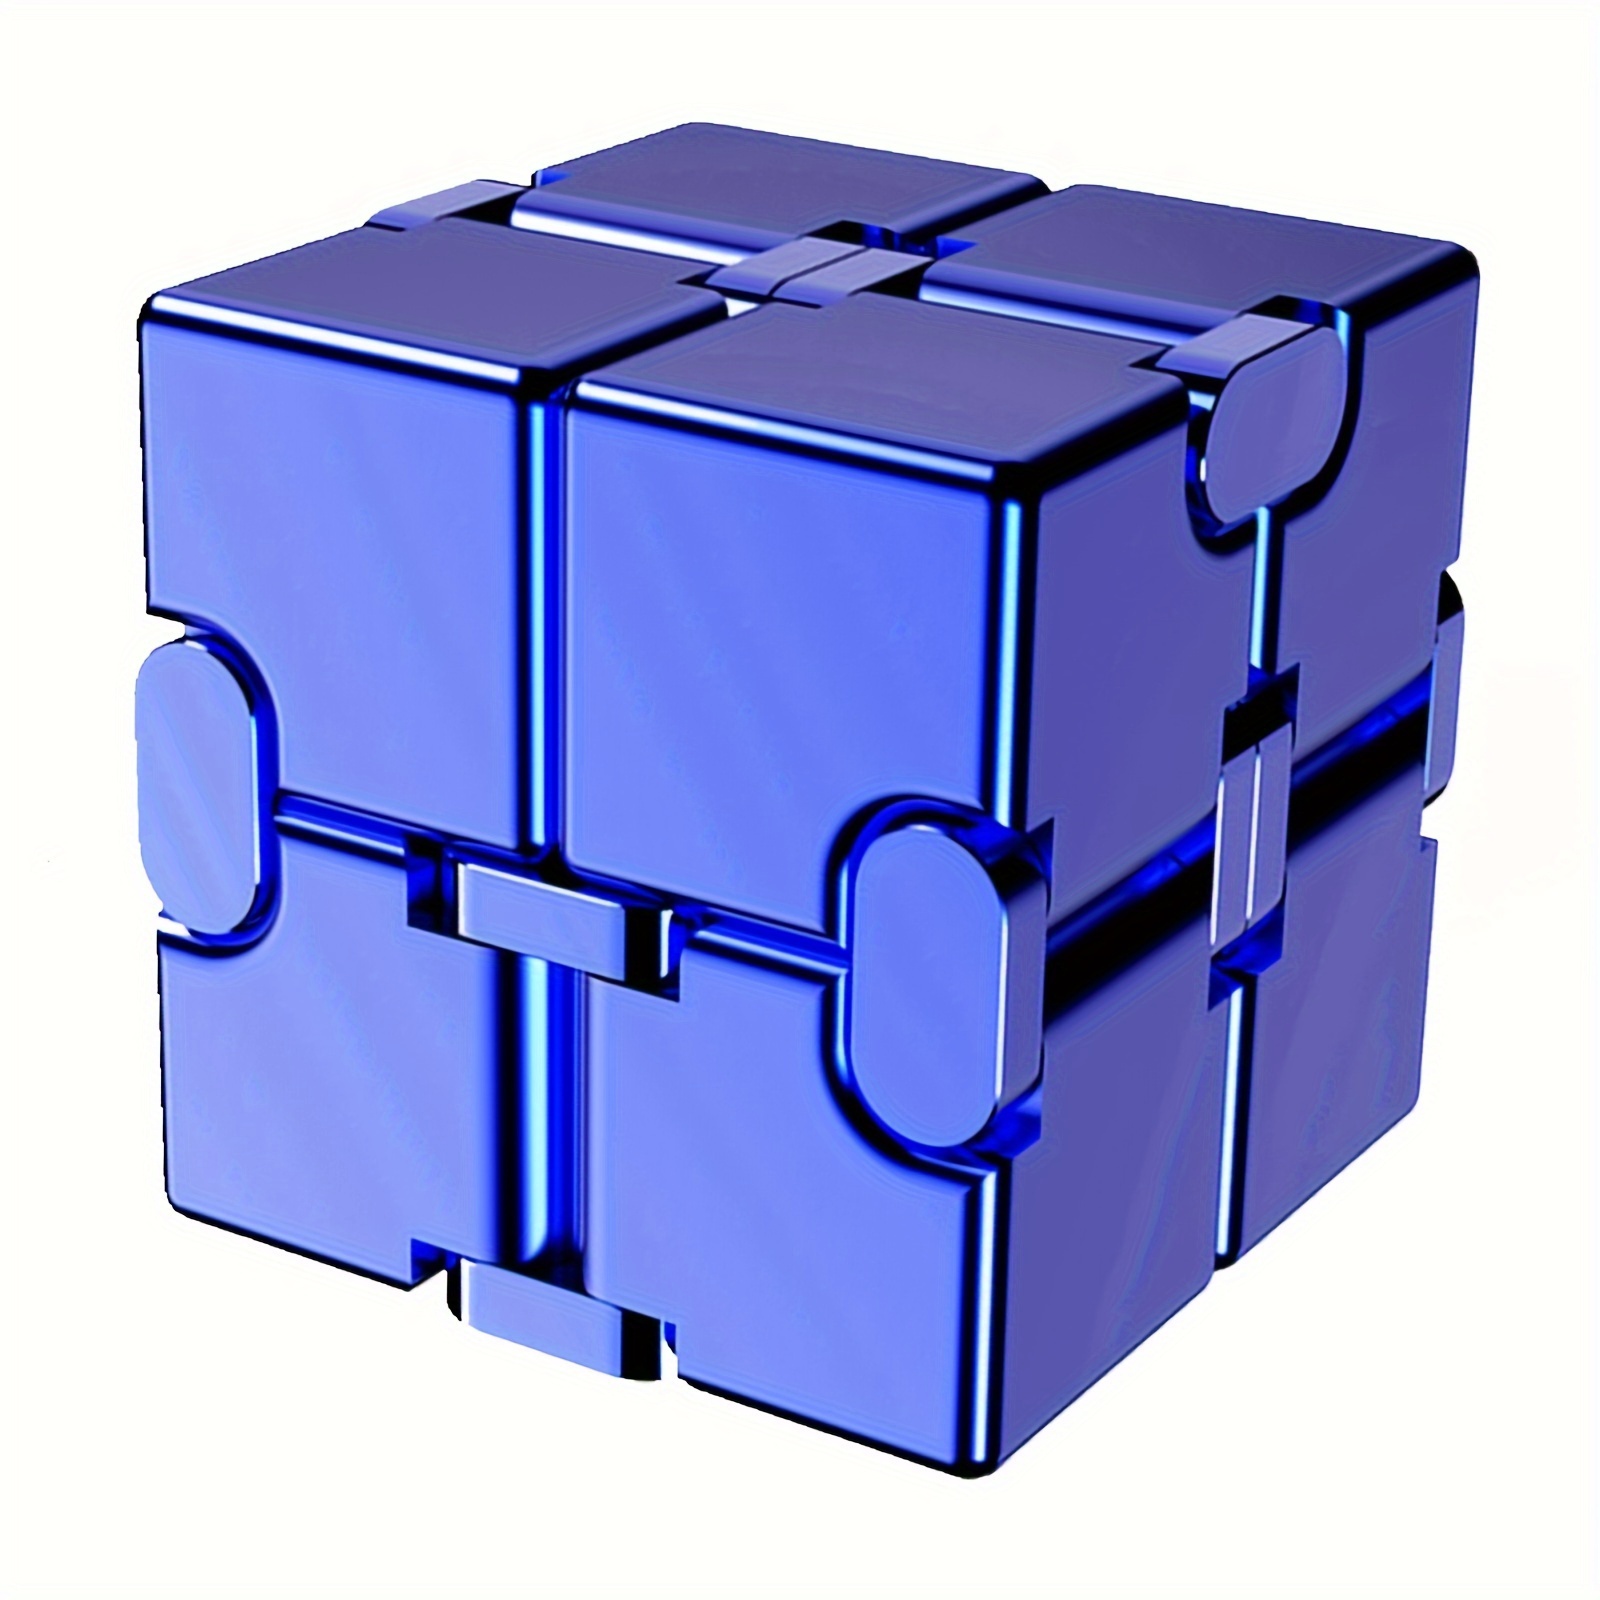 XINDAY Fidget Cube Jouet Anti Stress Pour Soulager Stress et